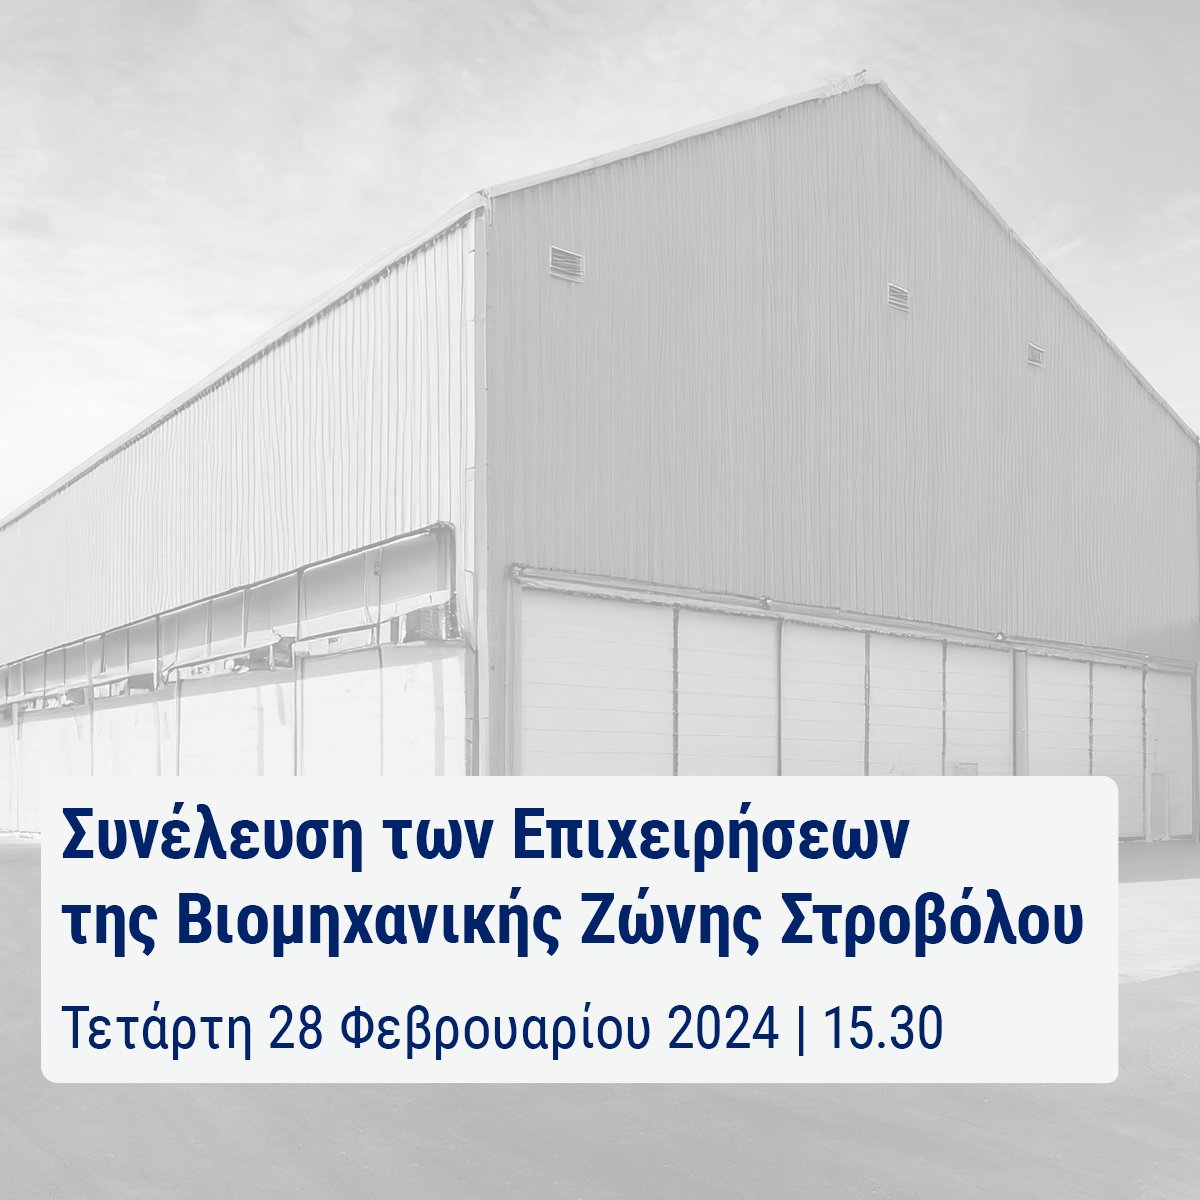 🔹Προσκαλείστε σε Συνέλευση των Επιχειρήσεων που δραστηριοποιούνται στη Βιομηχανική Ζώνη Στροβόλου (πλησίον του Νοσοκομείου Λευκωσίας, οδοί Κάμπου, Καλαμών, Μετεώρων, κλπ.) 🔹Δήλωση συμμετοχής: τηλ. 22643000 ή mgregoriou@oeb.org.cy @OEBcy #dimosstrovolou #cyprus